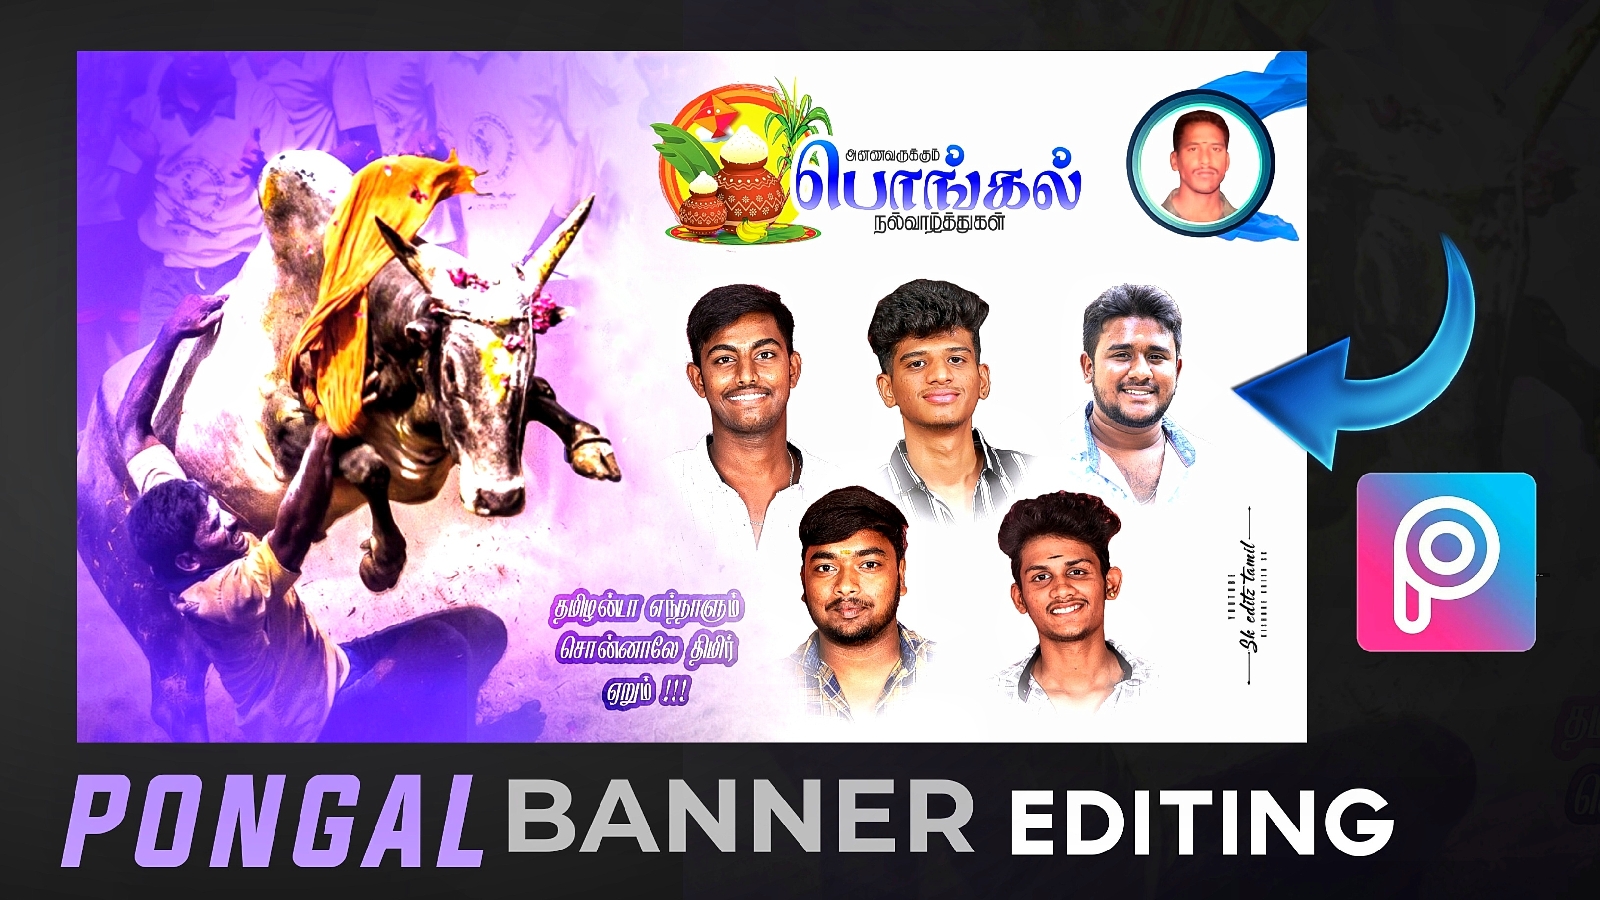 pongal Banner Editing picsart - sk editz tamil